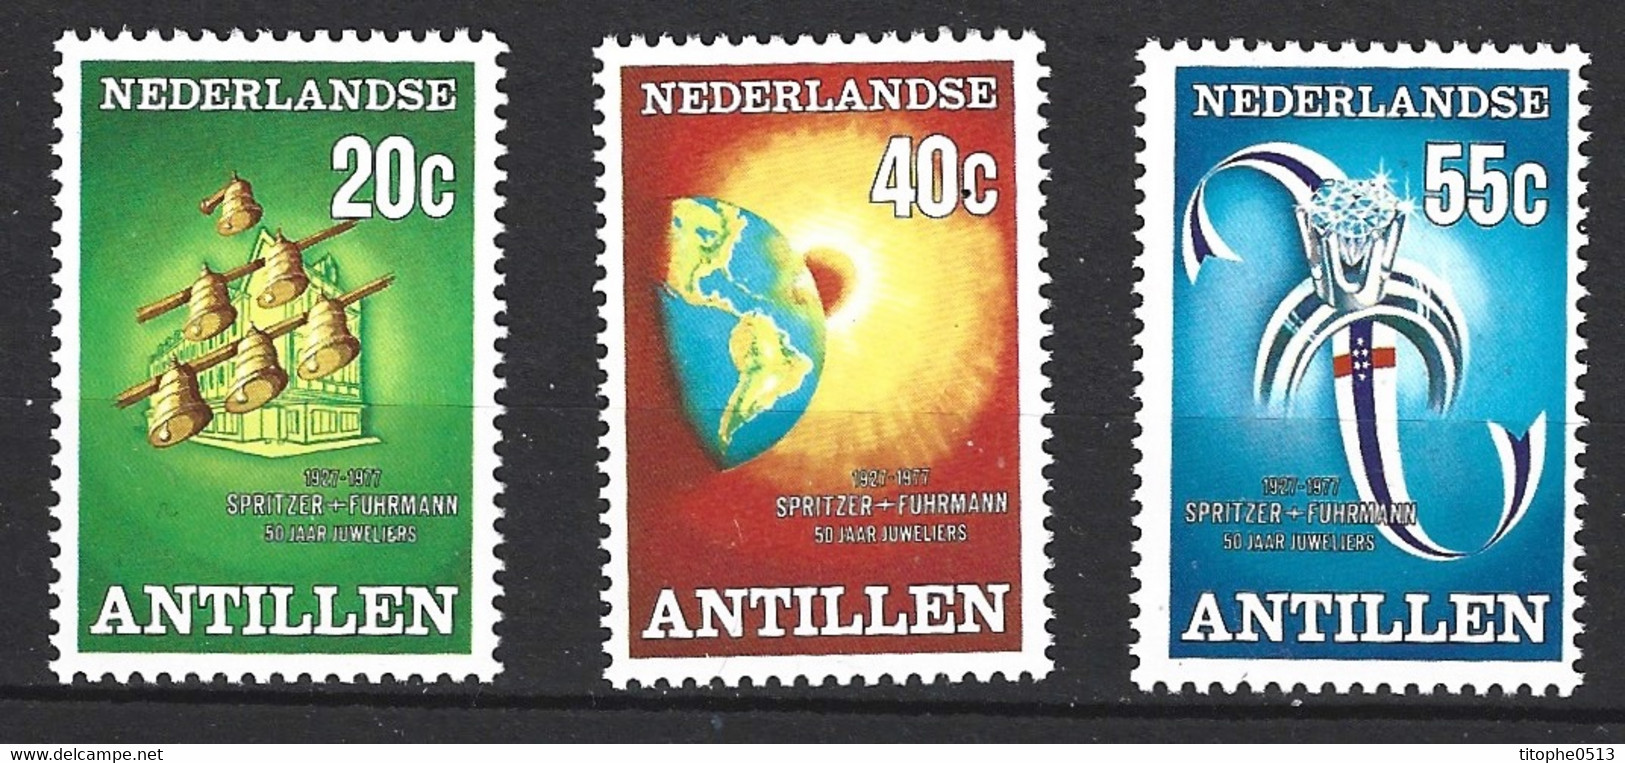 ANTILLES NEERLANDAISES. N°523-5 De 1977. Joaillerie. - Minéraux